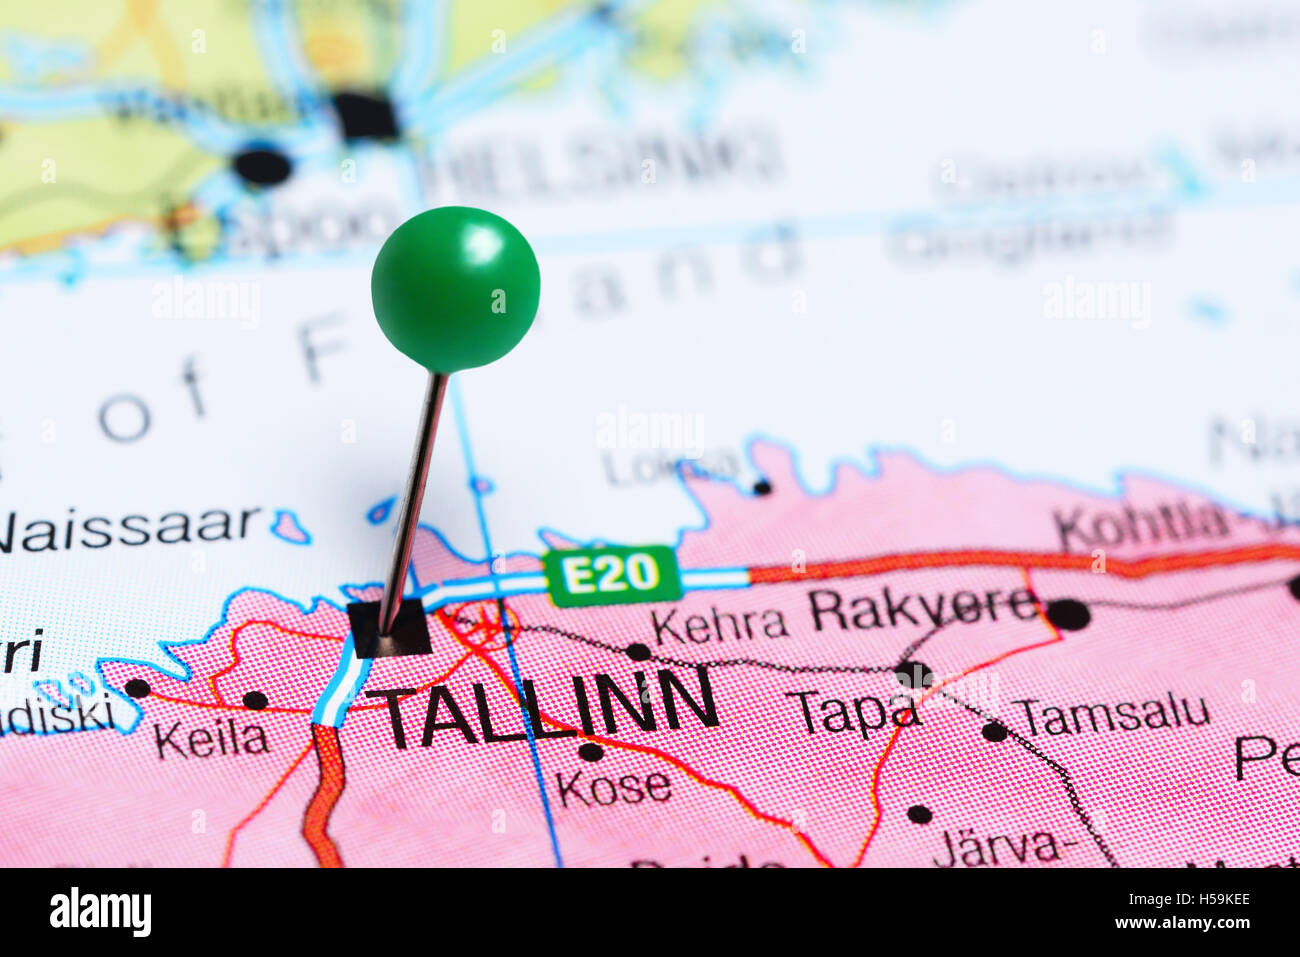 Tallinn pinned on a map of Estonia Stock Photo